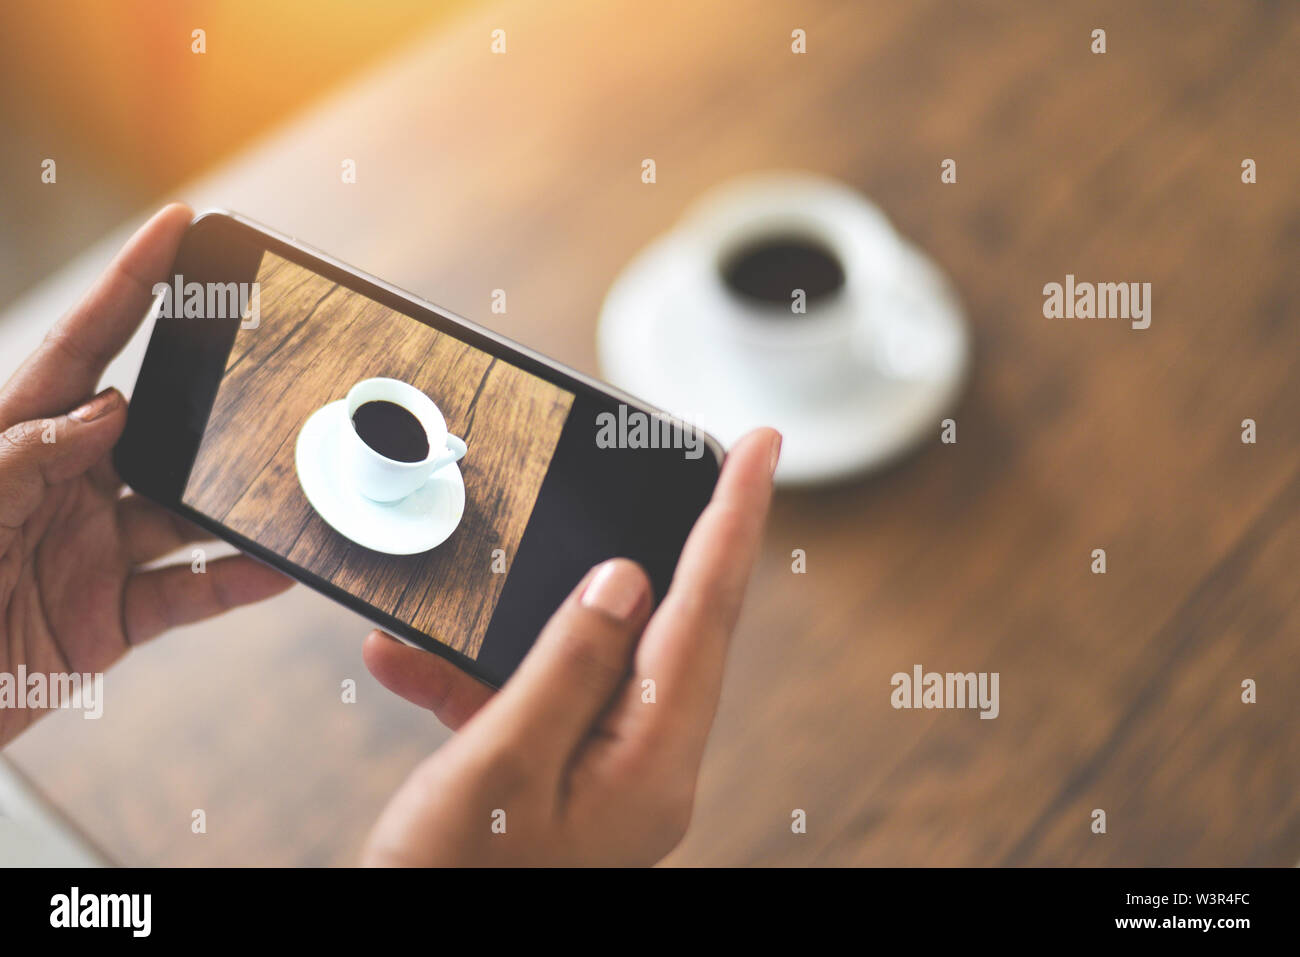 Tomar fotos con la cámara del smartphone de la de café para usar tecnología post cargar archivo en línea en Internet / Cierre de mujer mano sujetando el teléfono móvil